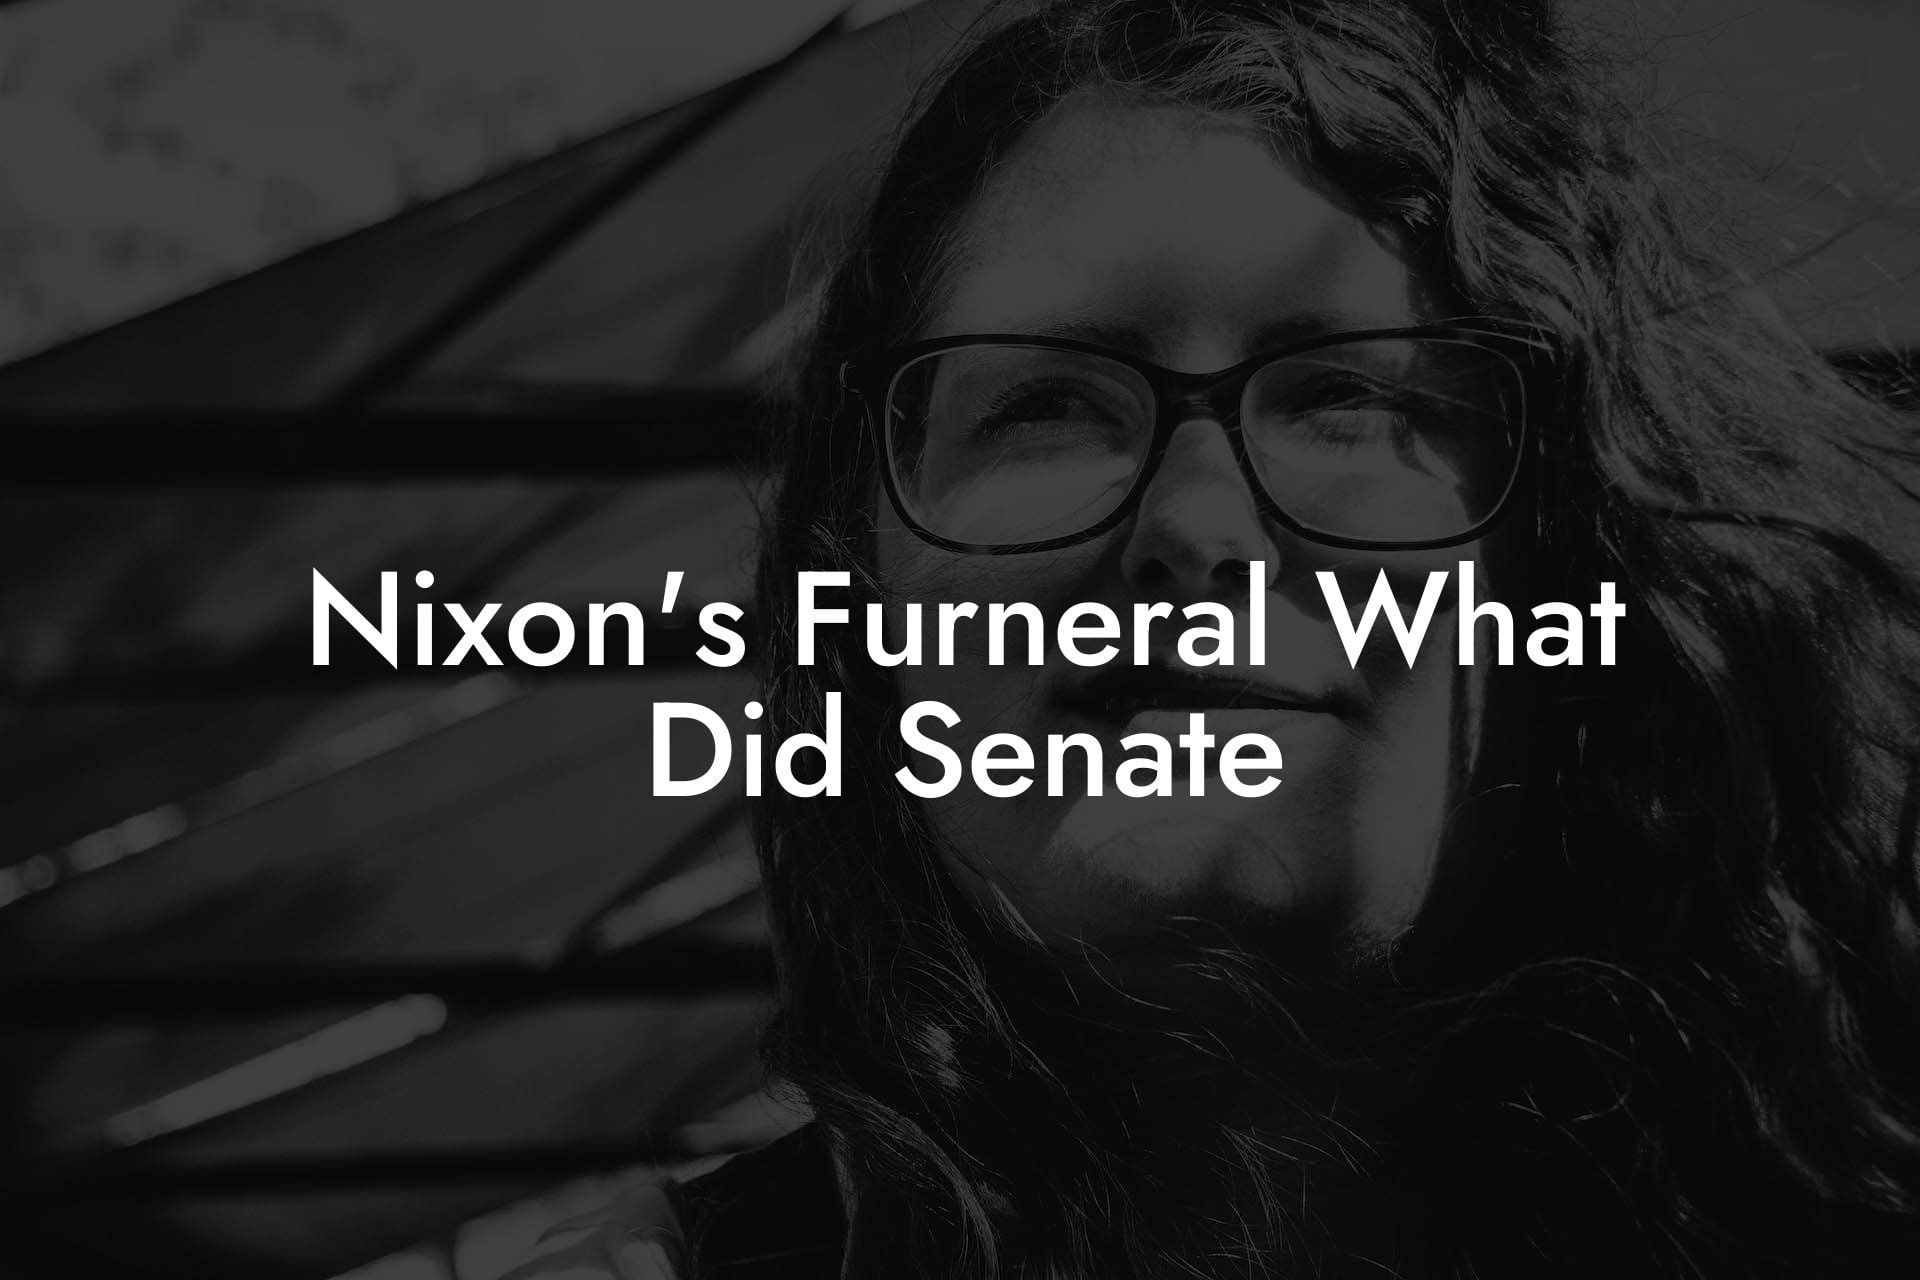 Nixon's Furneral What Did Senate